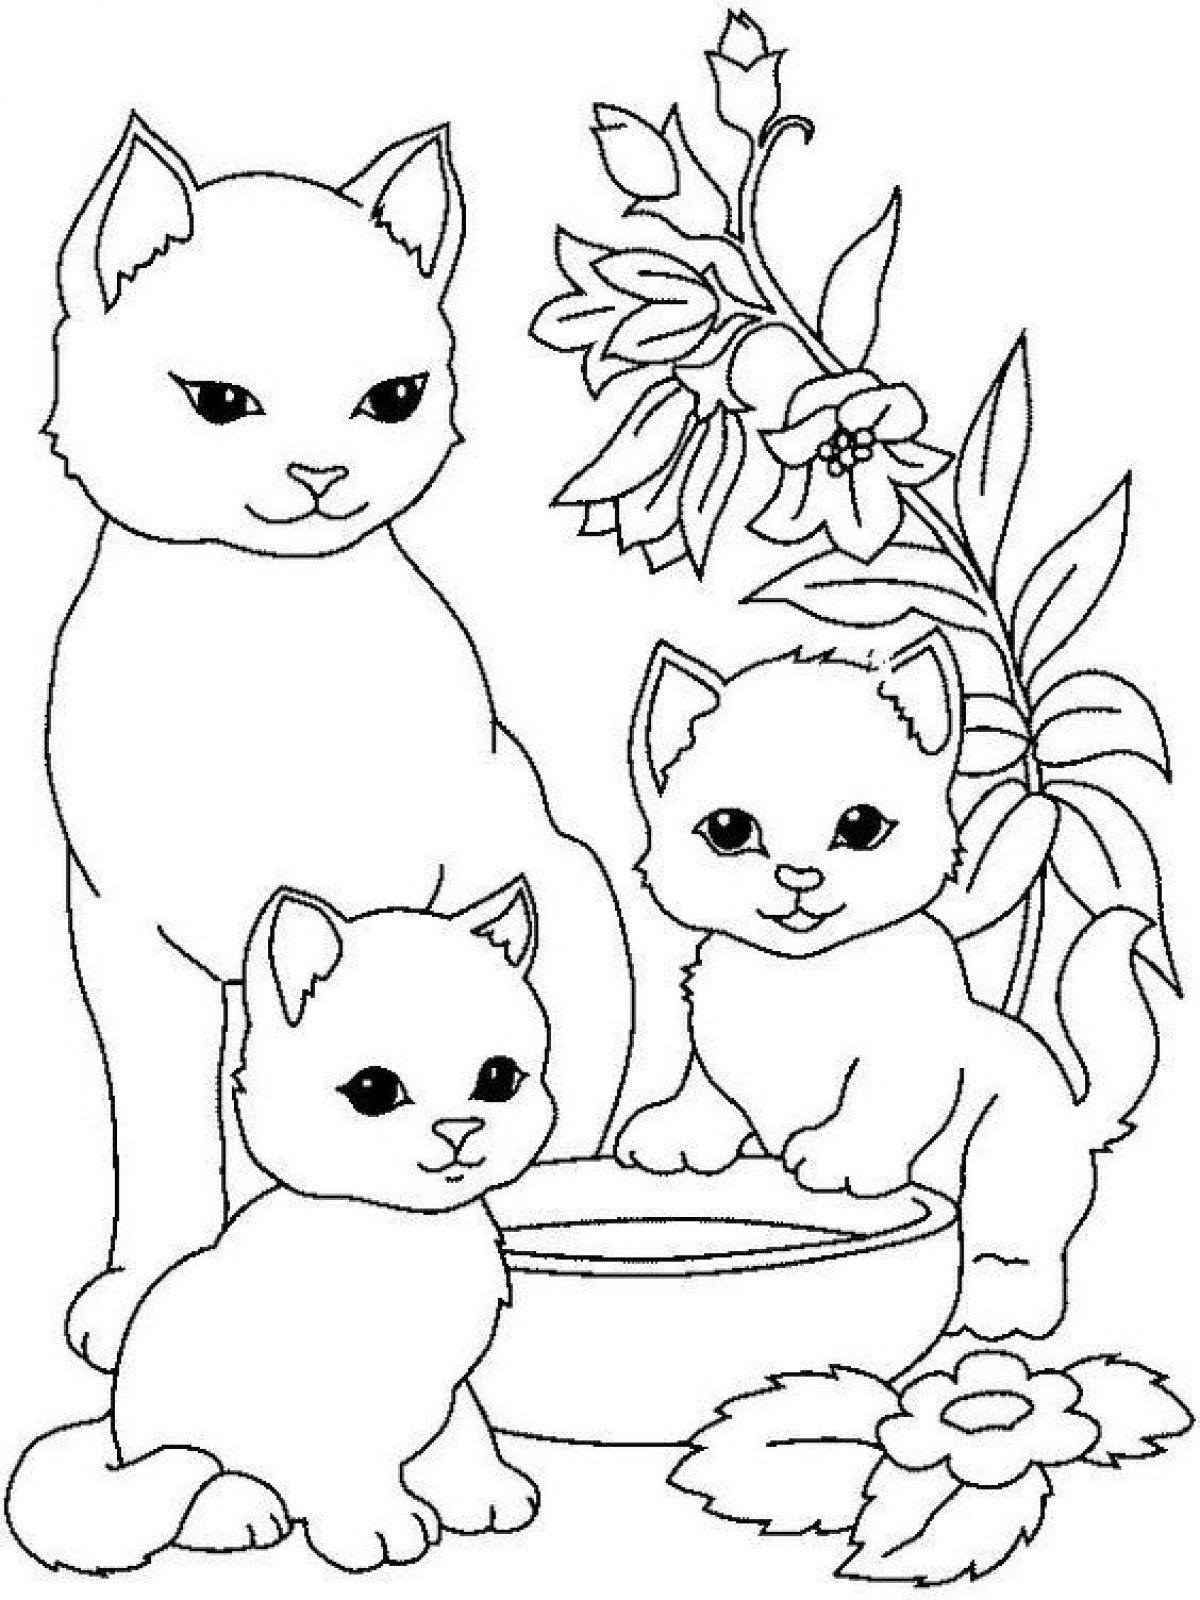 Картинки мультяшных котиков раскраски